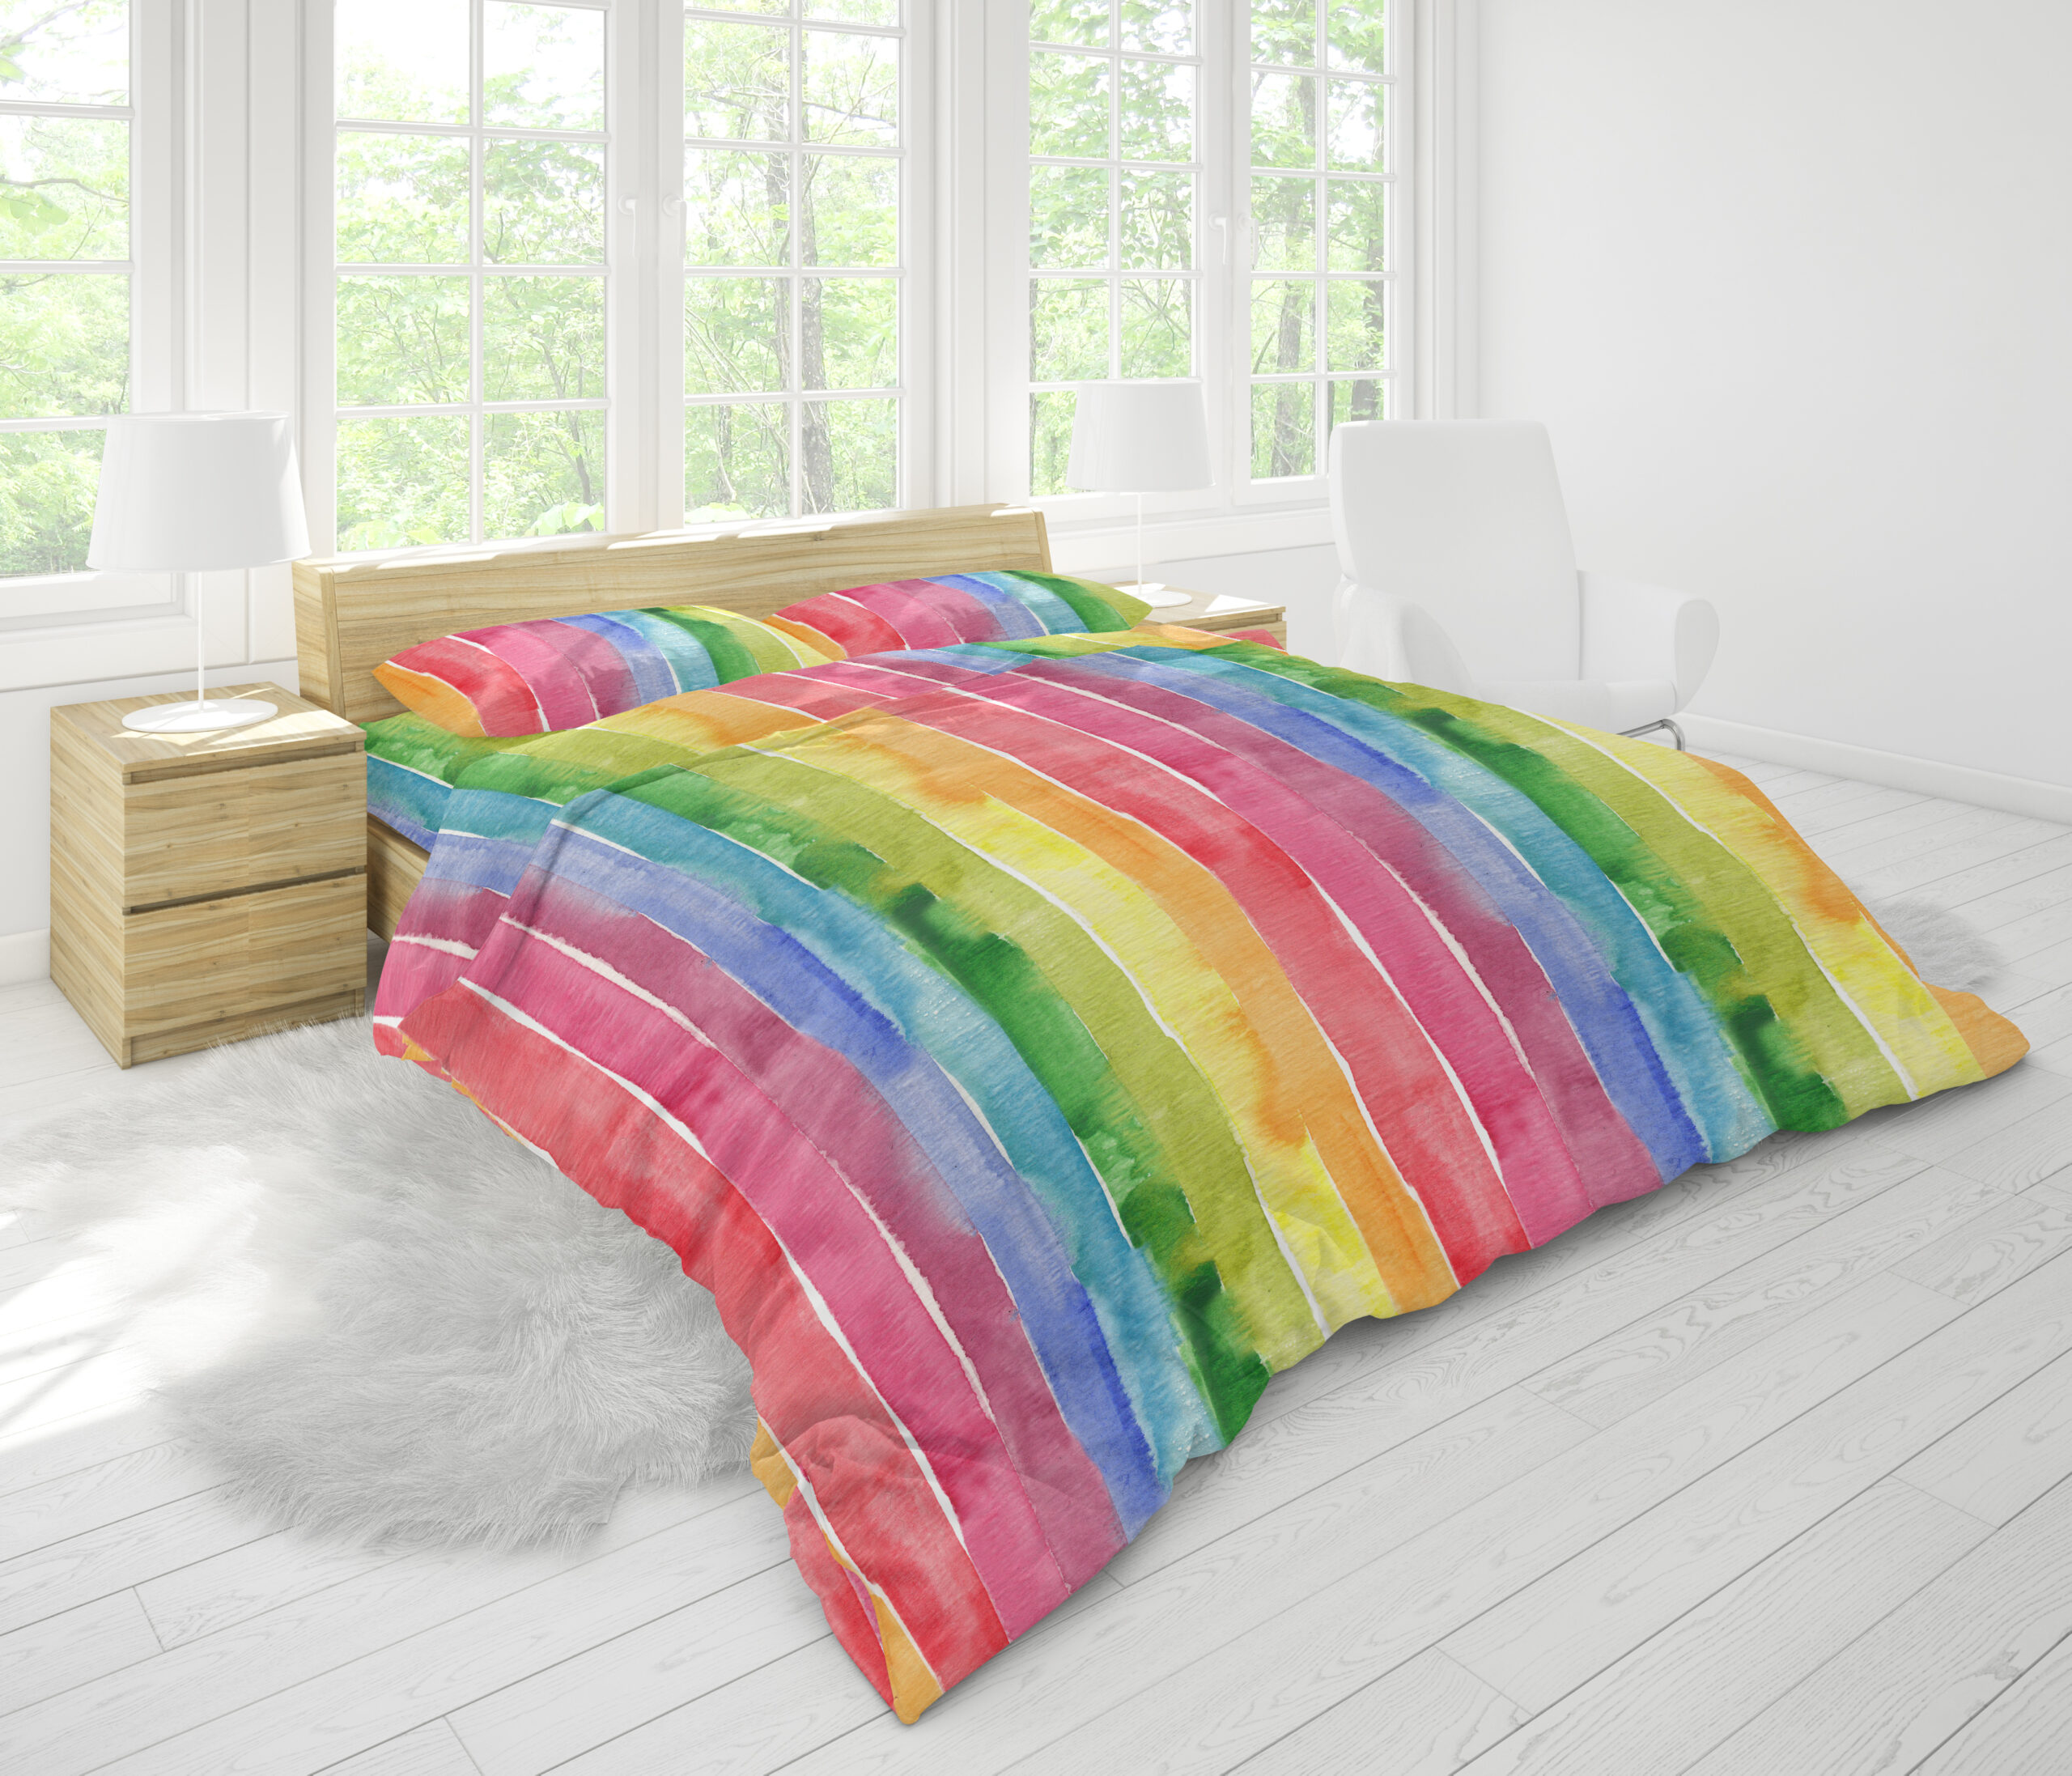 Stripe bedding